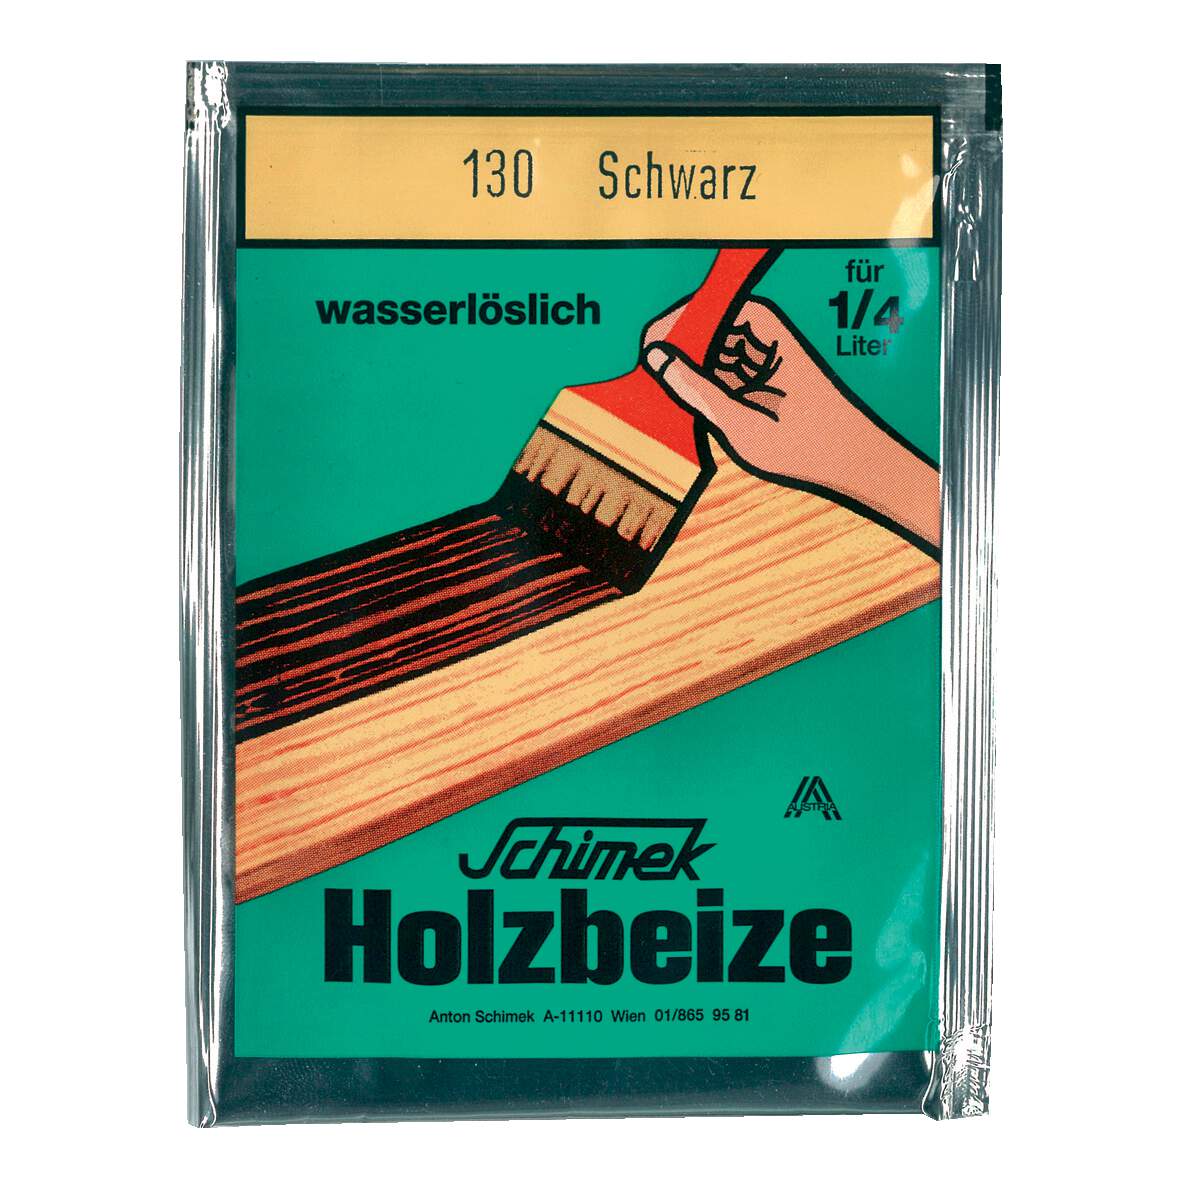 1216644 - Holzbeize wasserlöslich